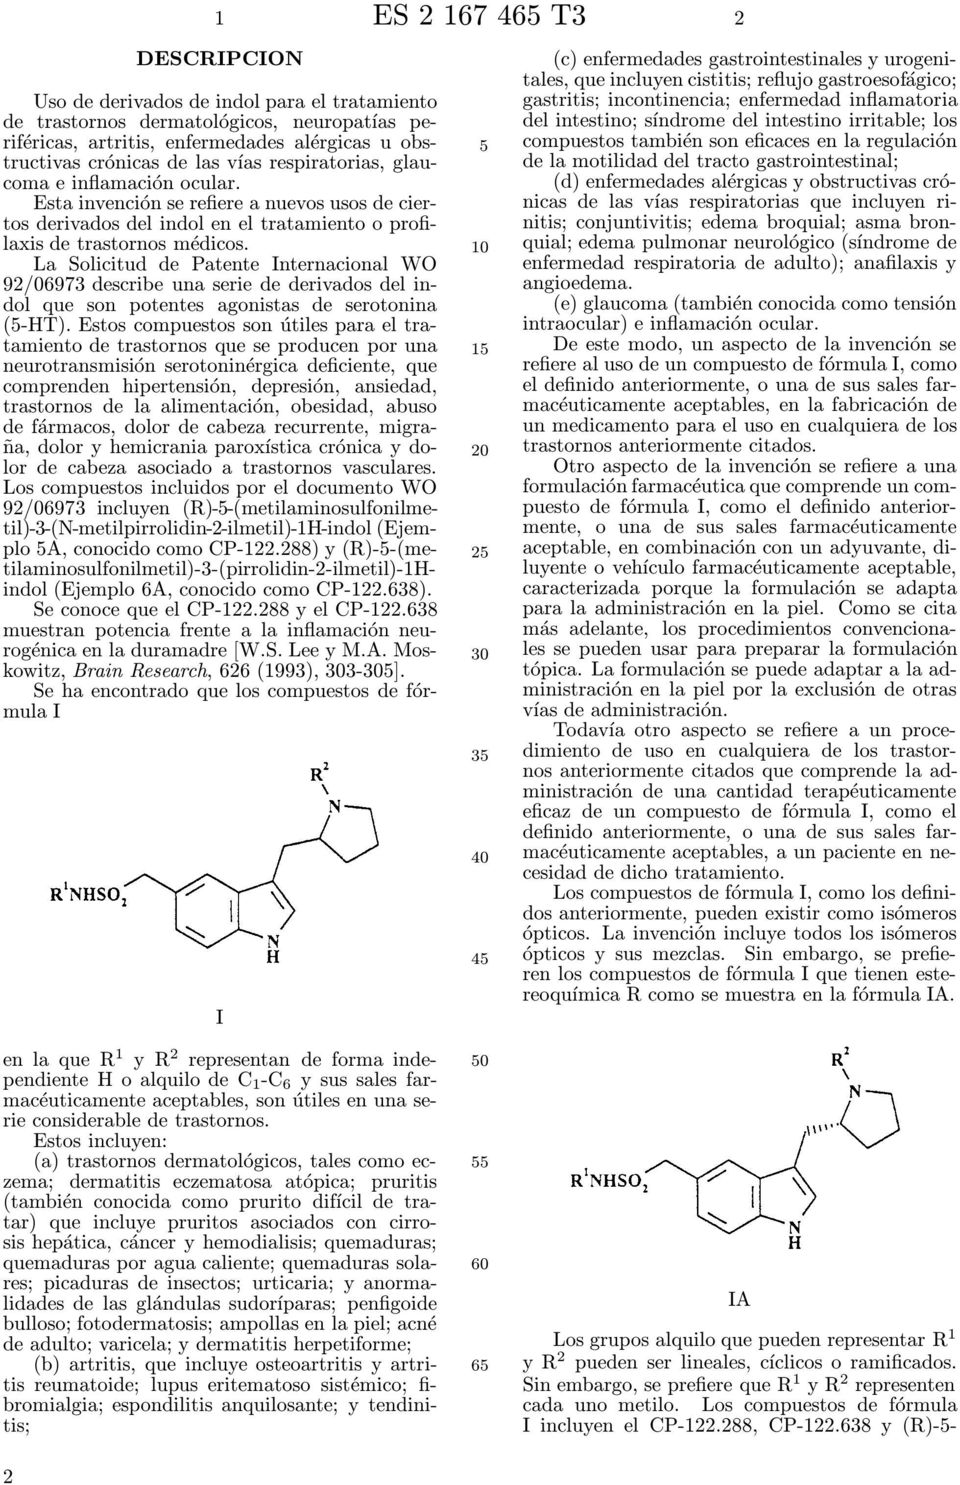 La Solicitud de Patente nternacional WO 92/06973 describe una serie de derivados del indol que son potentes agonistas de serotonina (-HT).